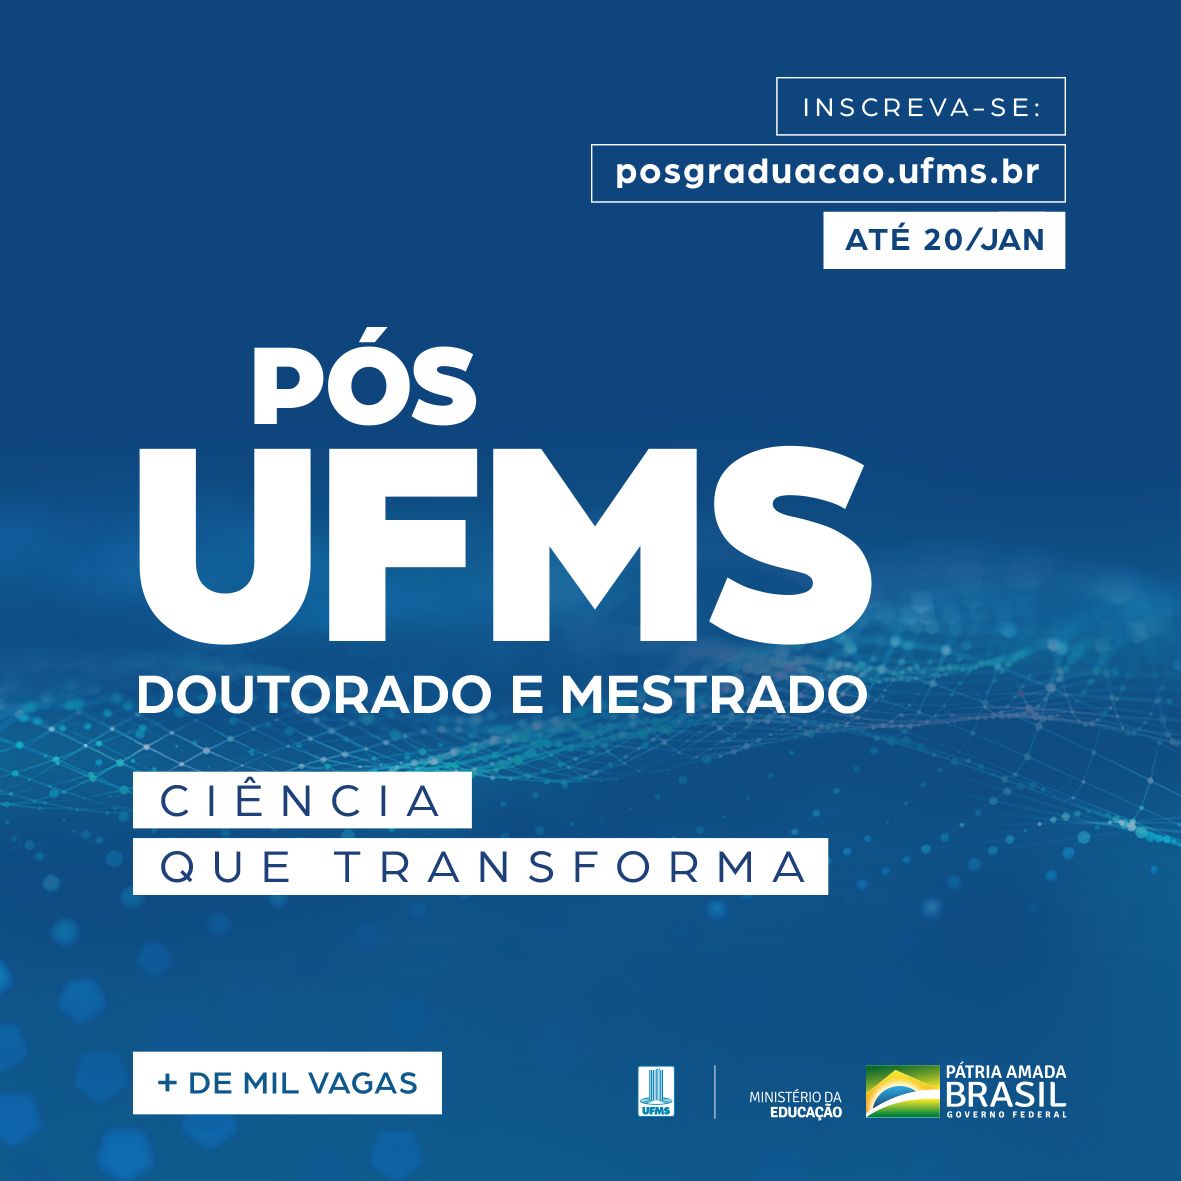 Inscrições abertas para 57 cursos de mestrado e doutorado UFMS